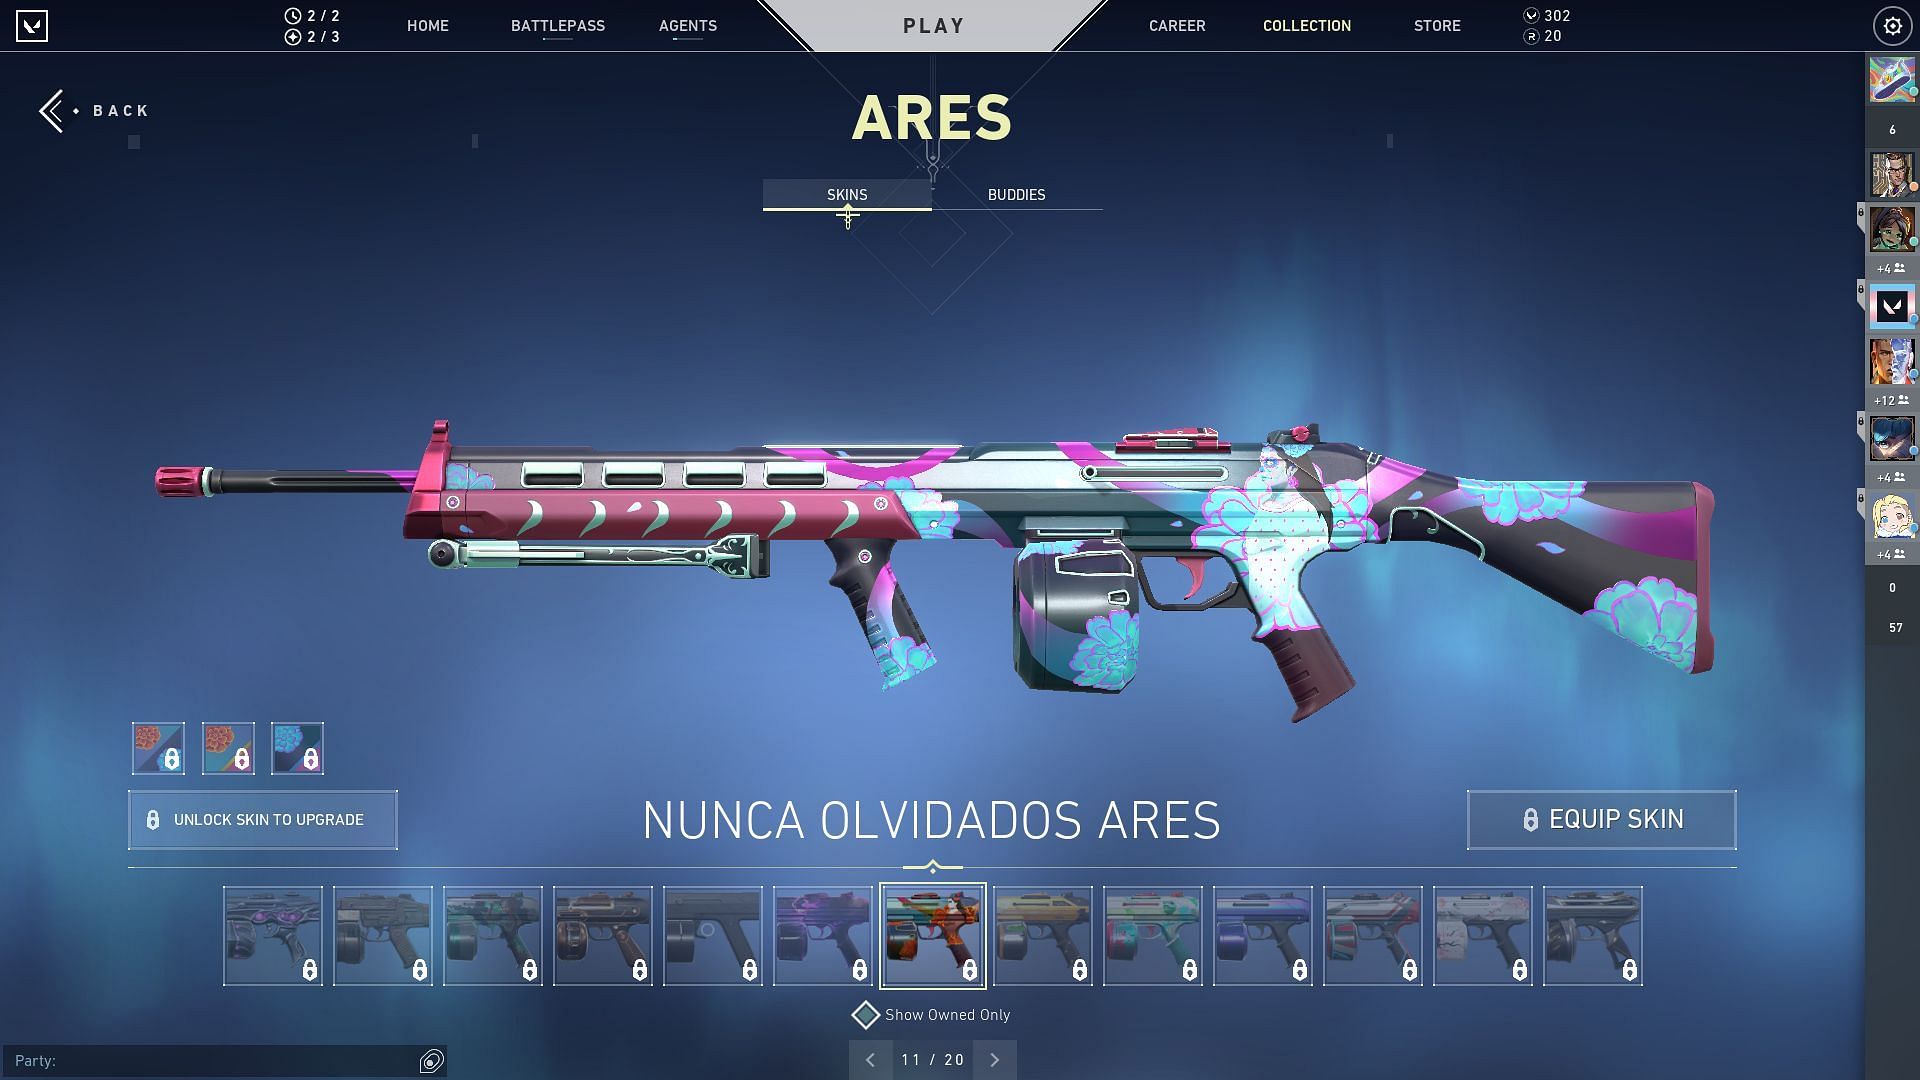 Nunca Olvidados Ares (Image via Sportskeeda)